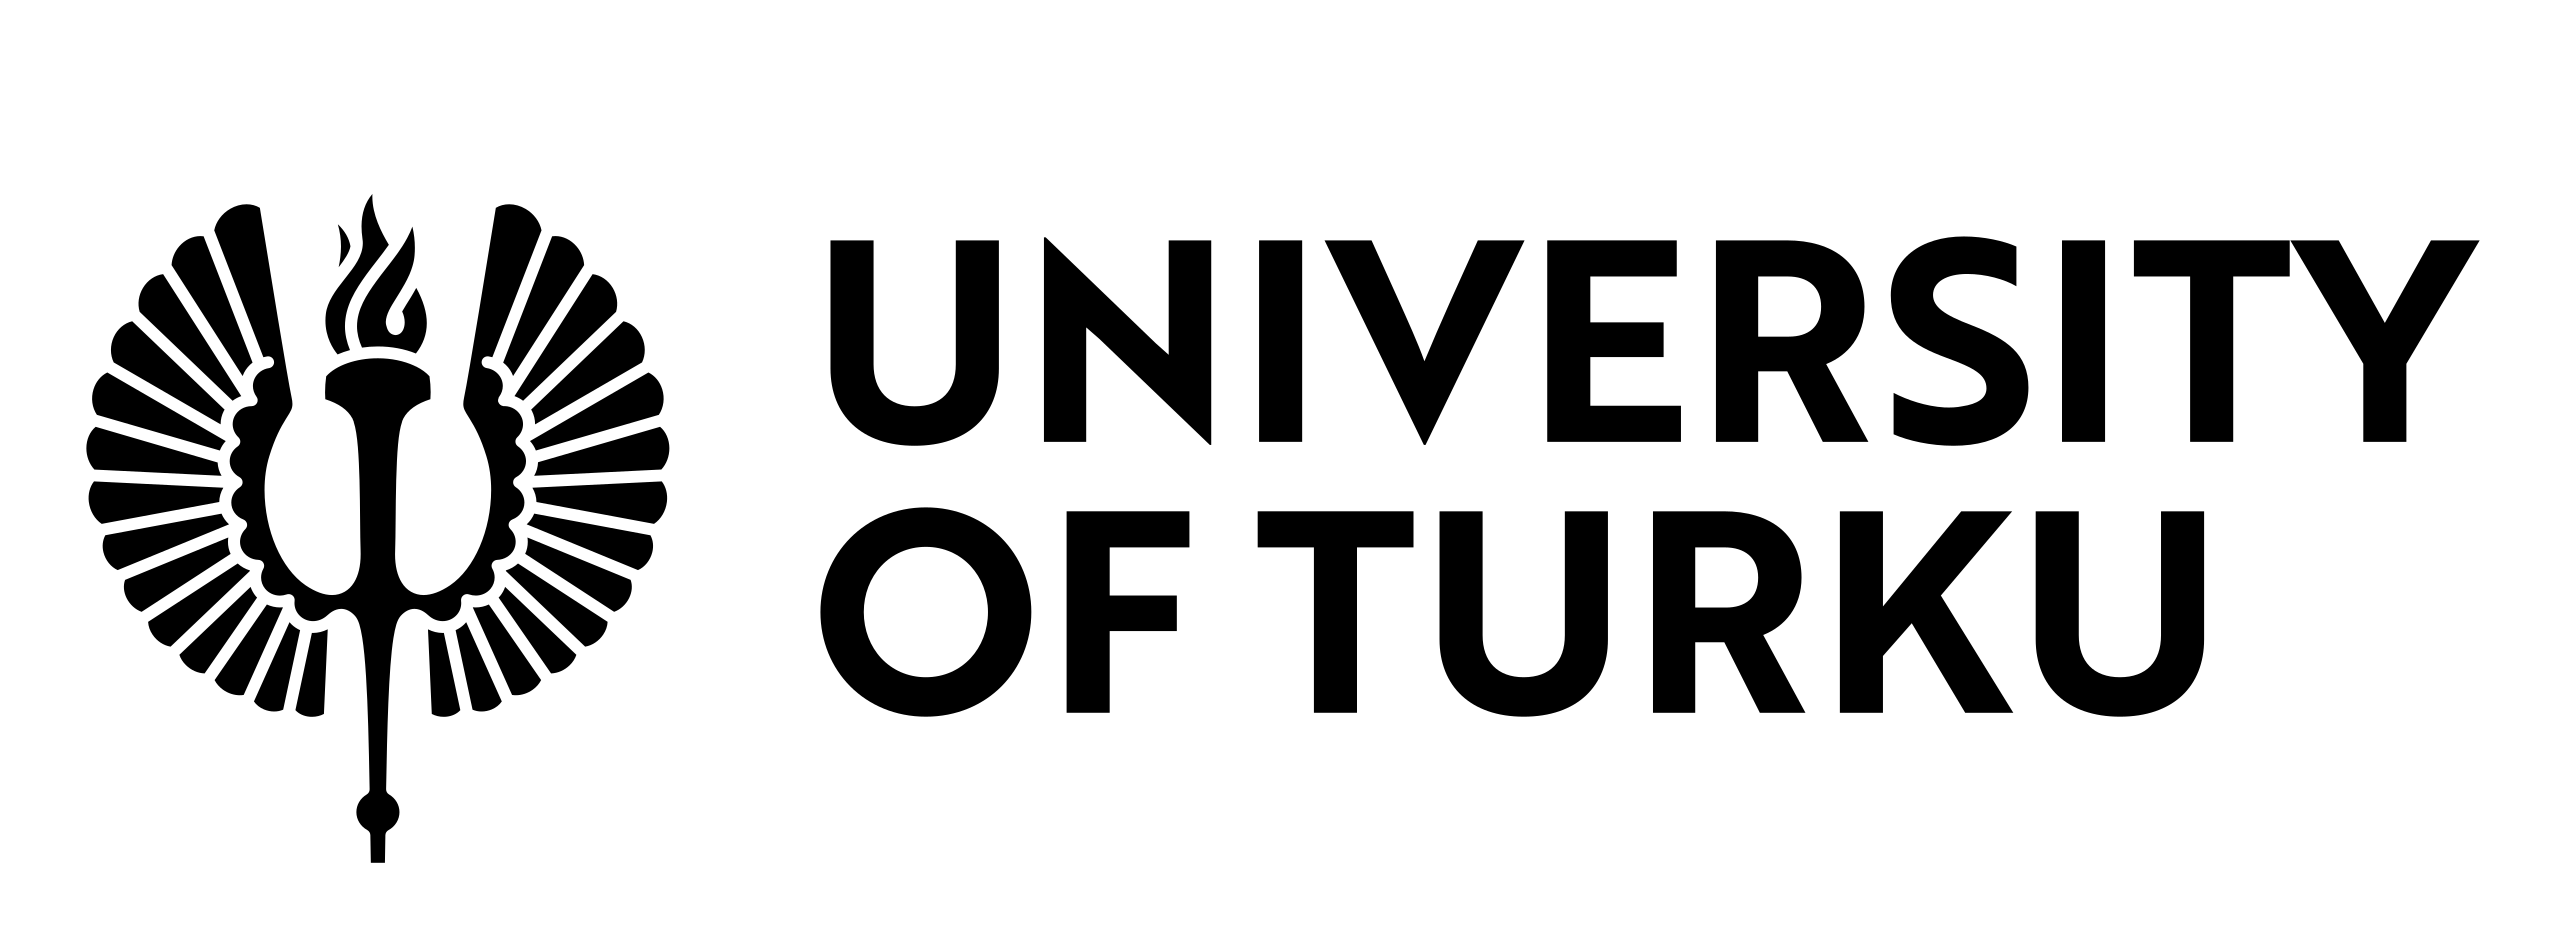 Edus logo